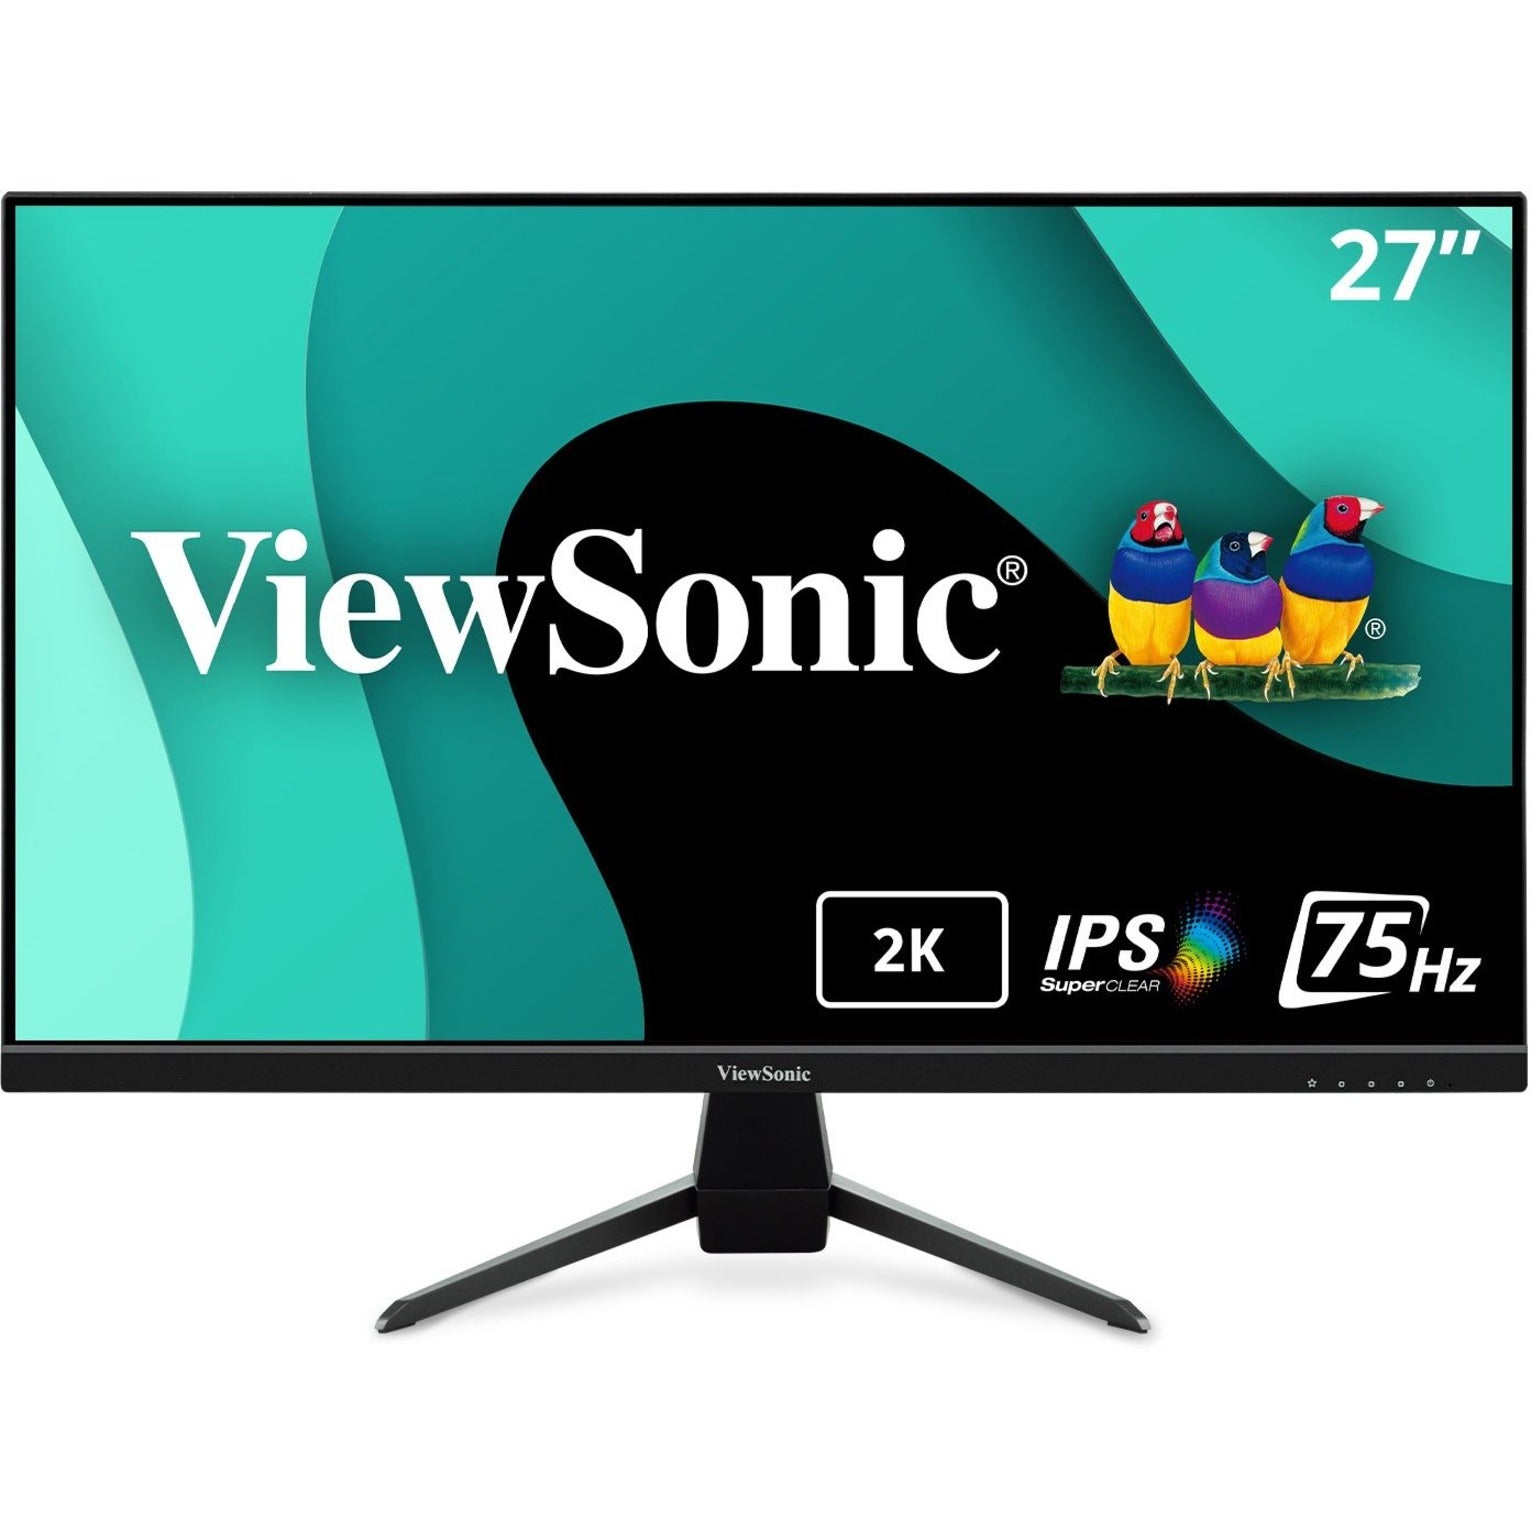 ViewSonic VX2767U-2K 27 2K QHD Thin-Bezel IPS Monitor with USB-C, HDMI, and DisplayPort